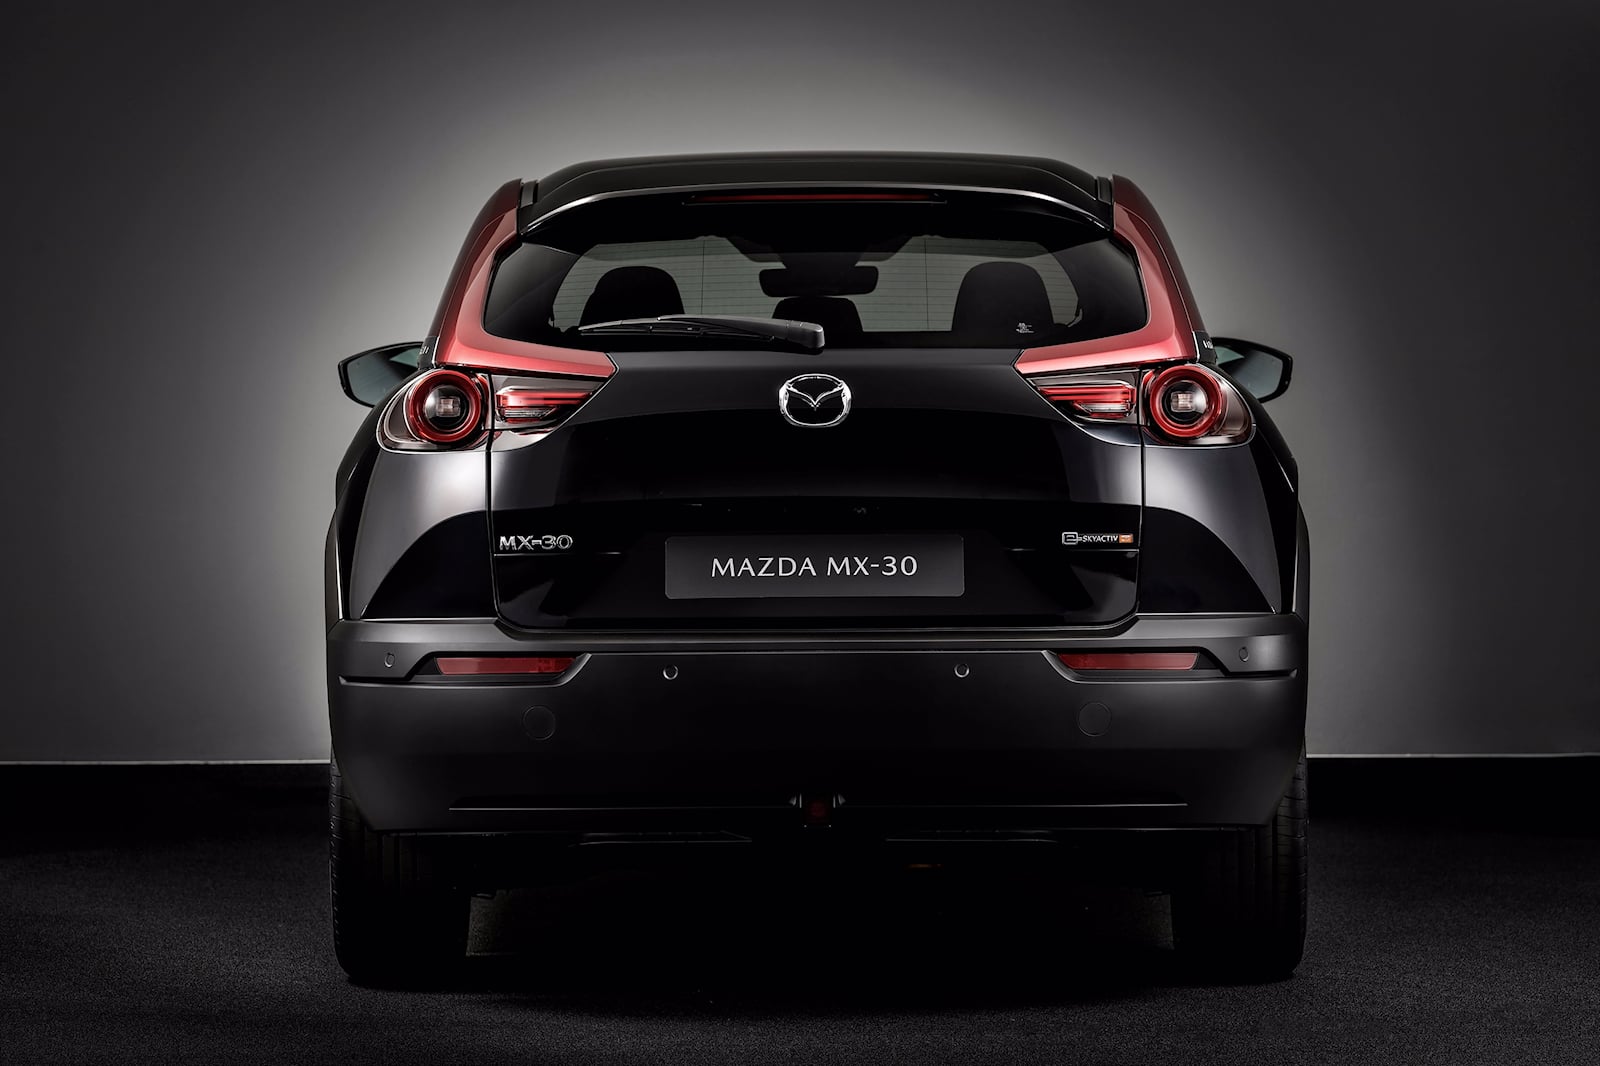 «Ротар — наш символ», — сказал Ногучи. «Инженеры Mazda мечтают о спортивном автомобиле с роторным двигателем. Сейчас не время для этого». Компания должна сосредоточиться на наращивании своего электромобиля в первую очередь, так как это будет драйверо